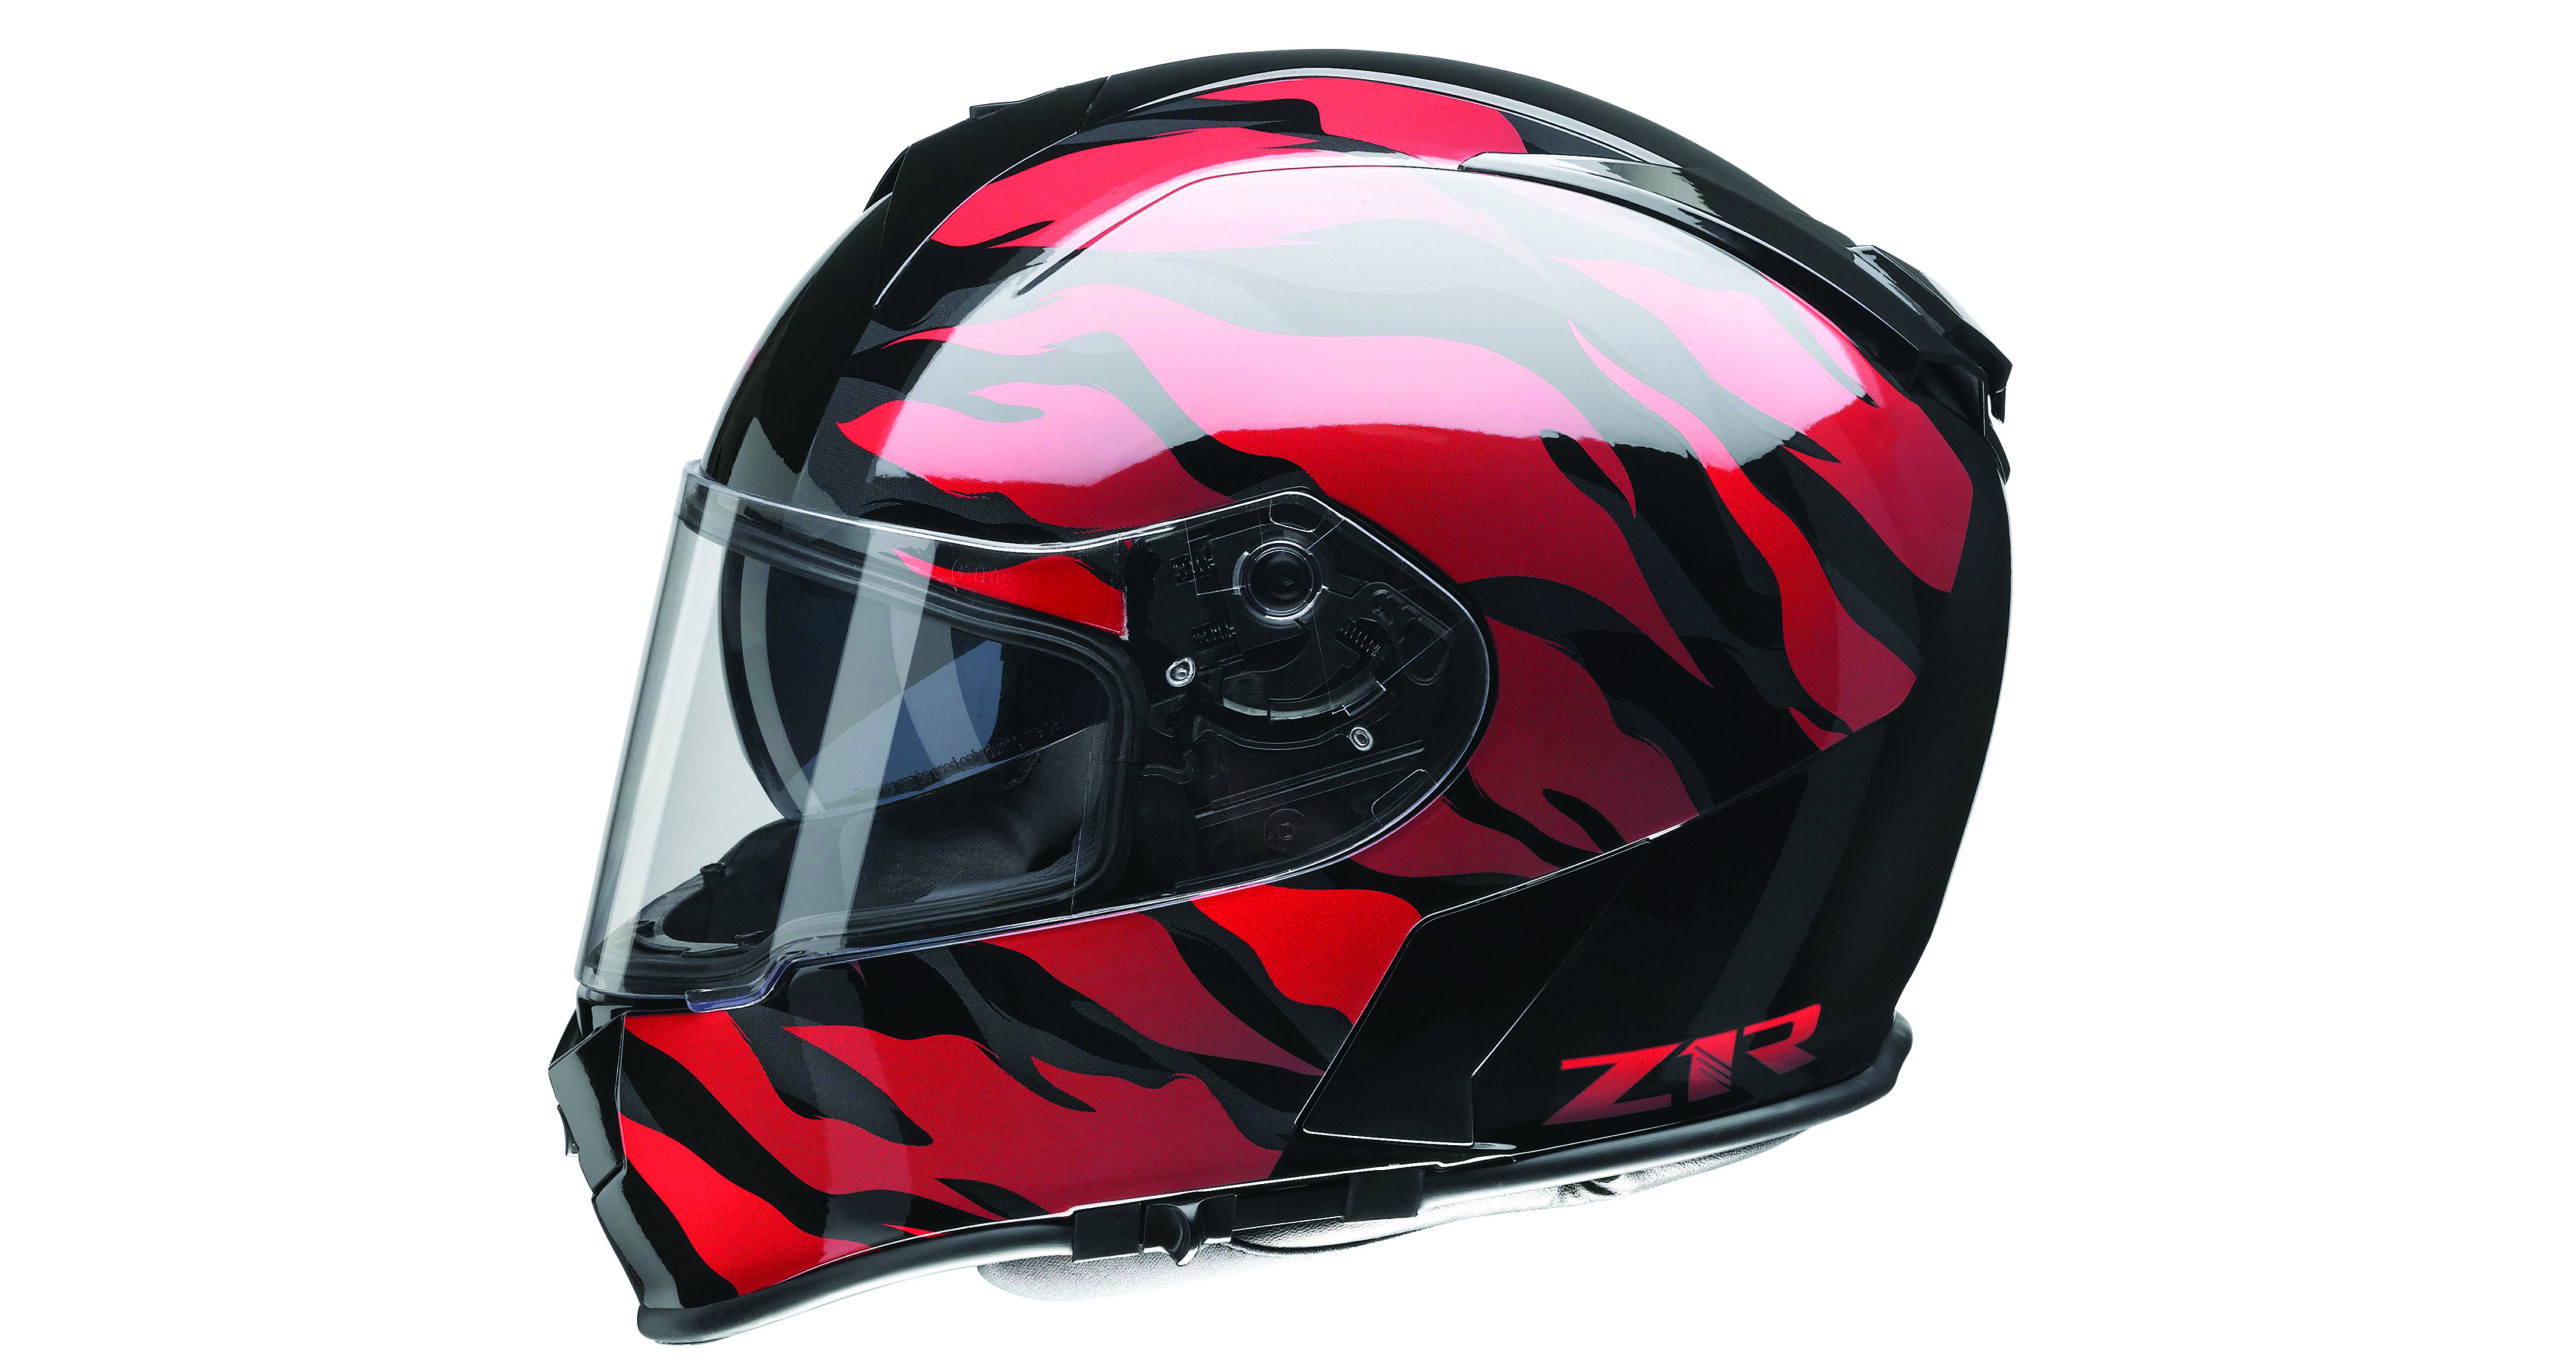 Z1R releases Warrant helmet